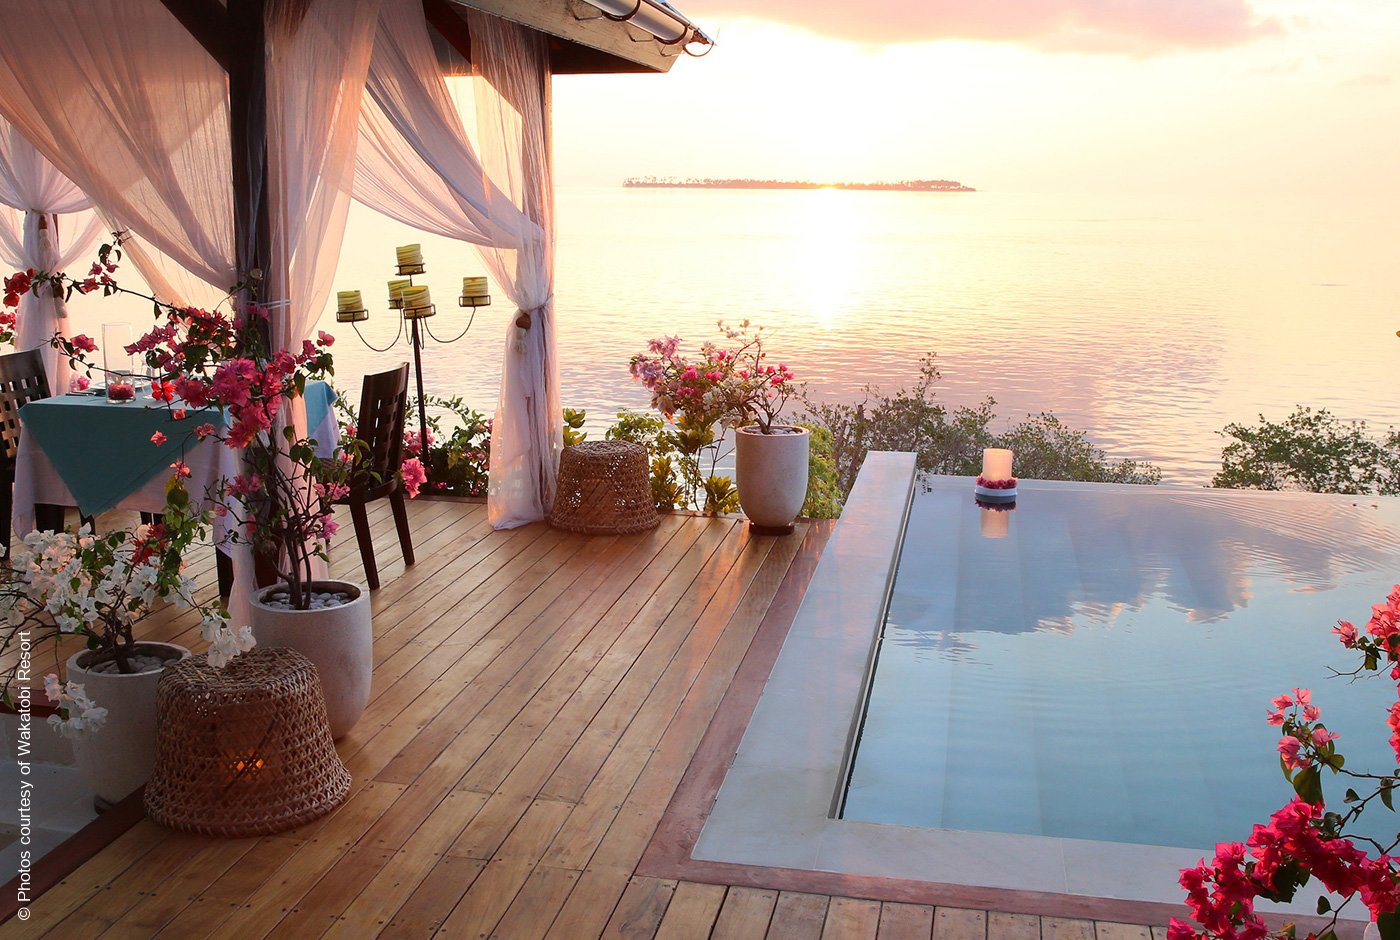 Wakatobi Dive Resort | Indonesien | Villa 2 Ausblick | Archiv | luxuszeit.com